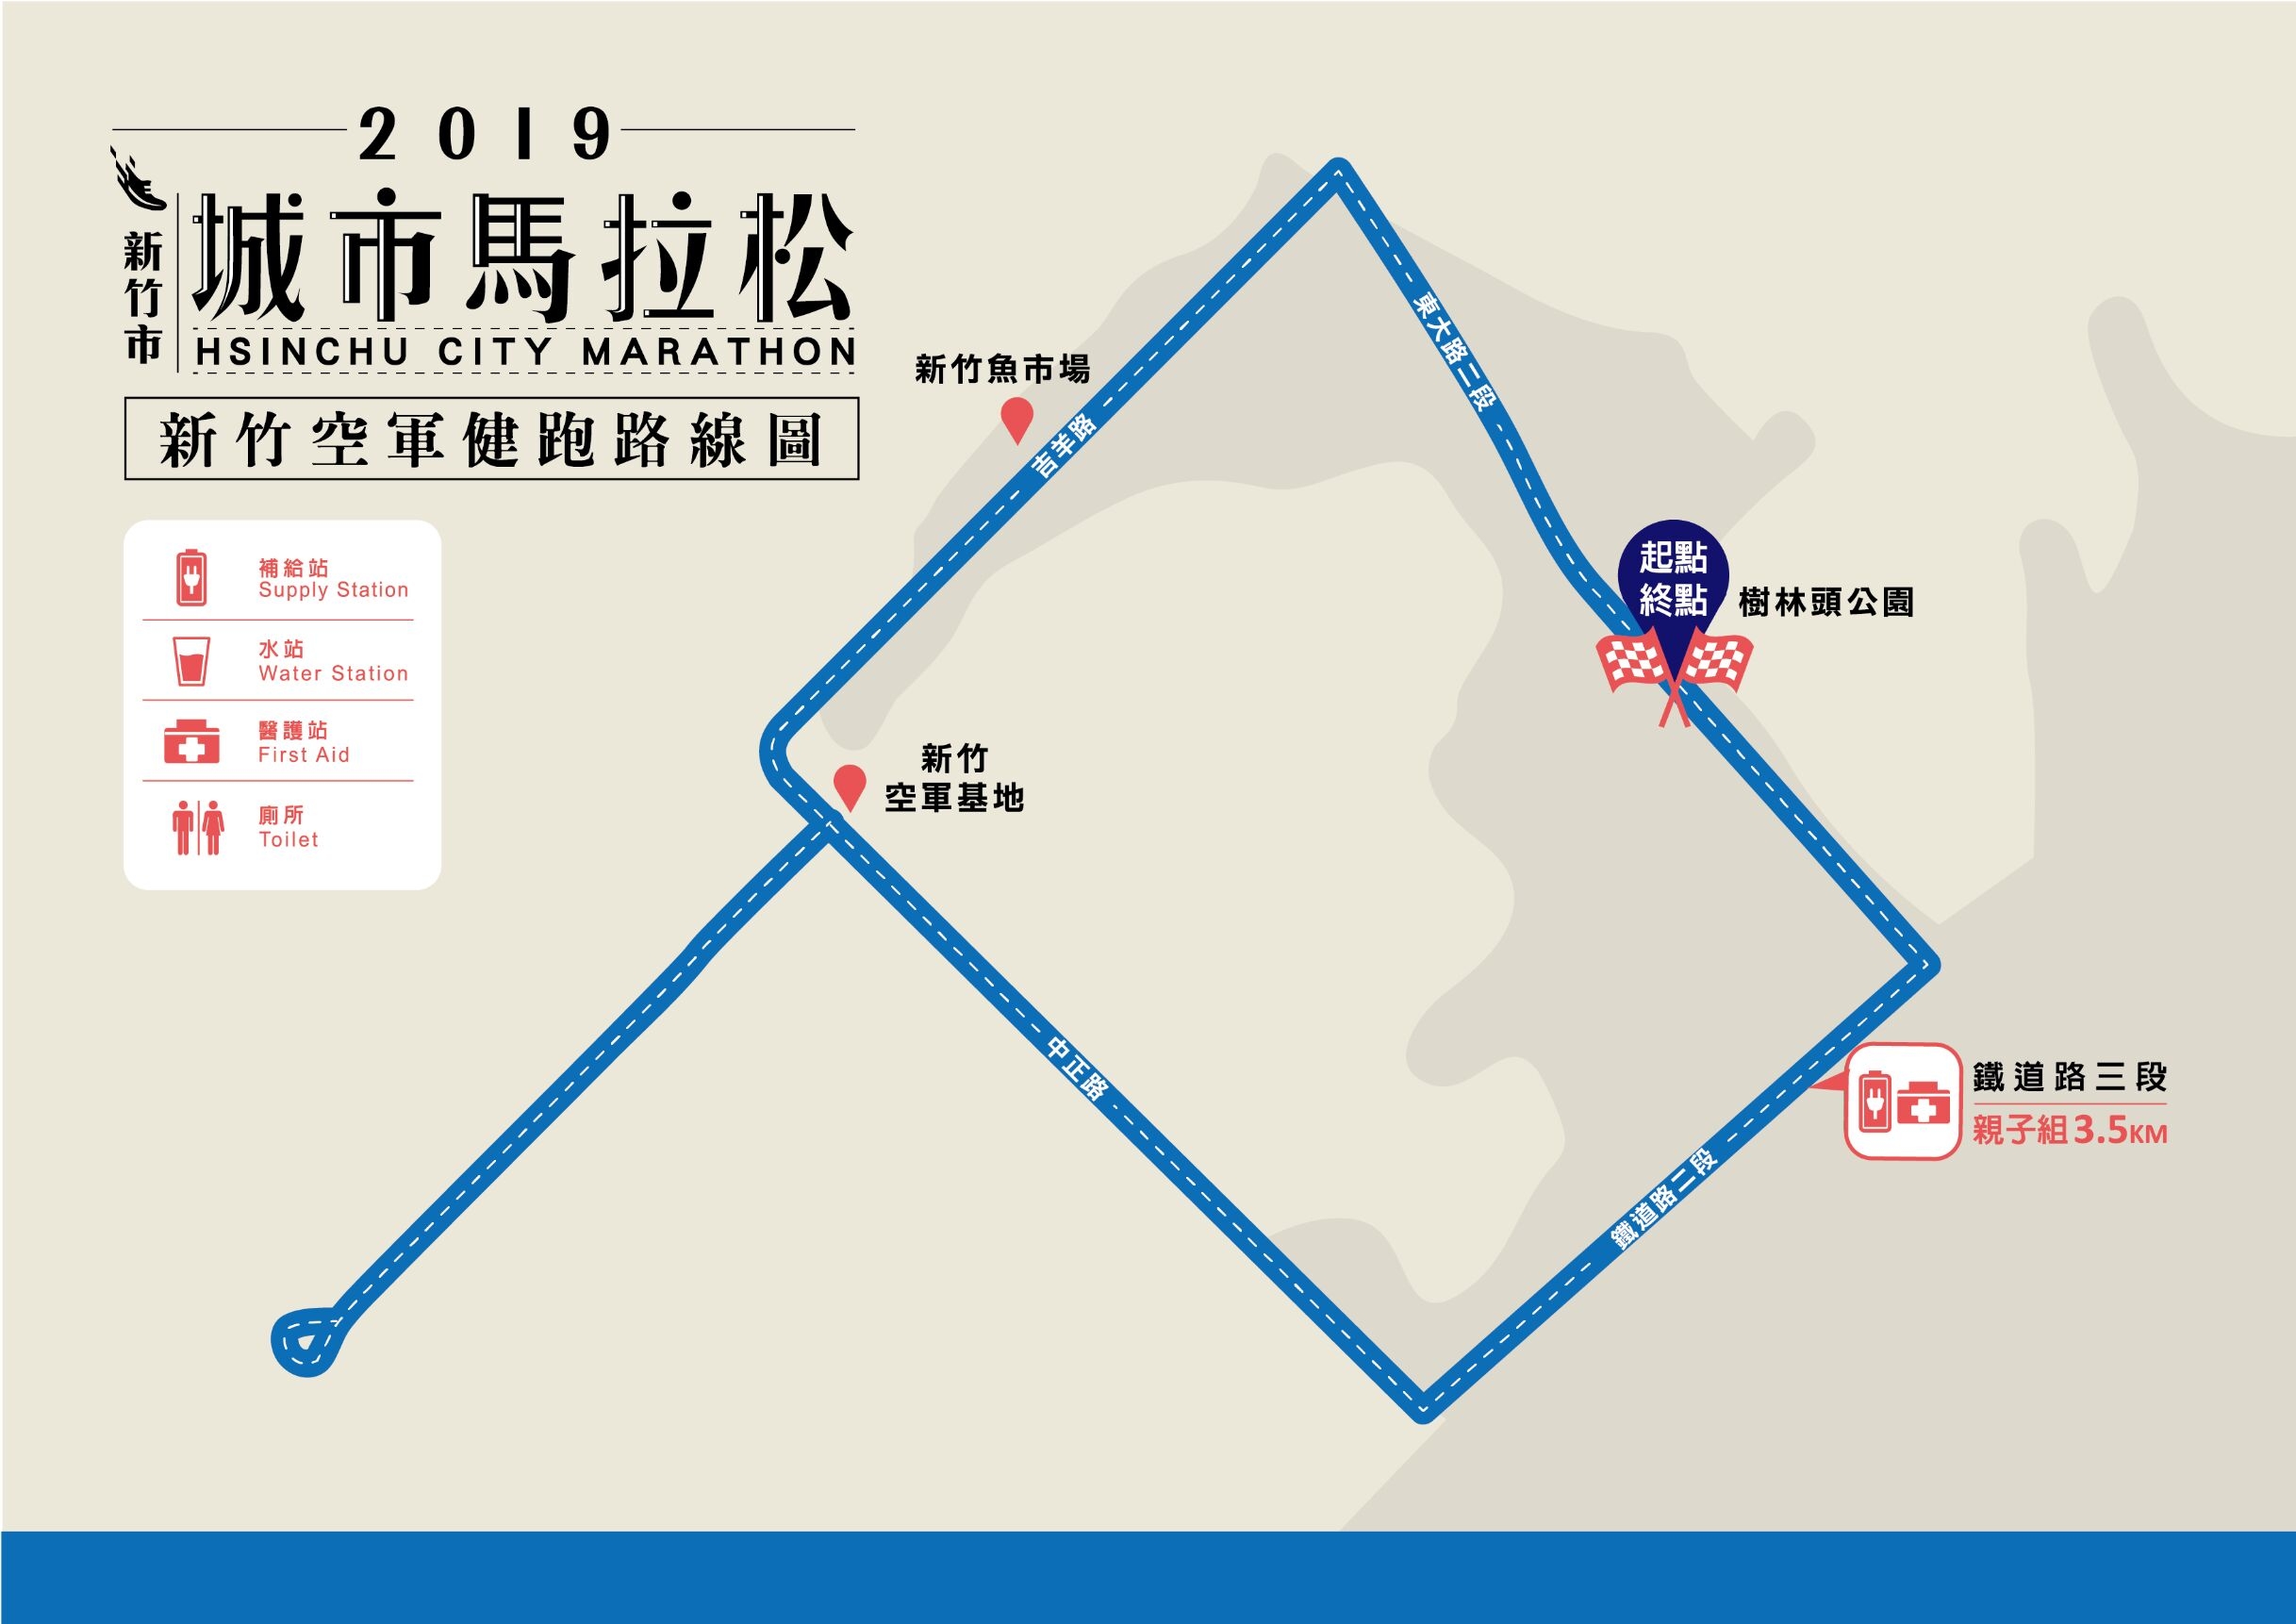 2019新竹市城市馬拉松 道路沿線管制公告